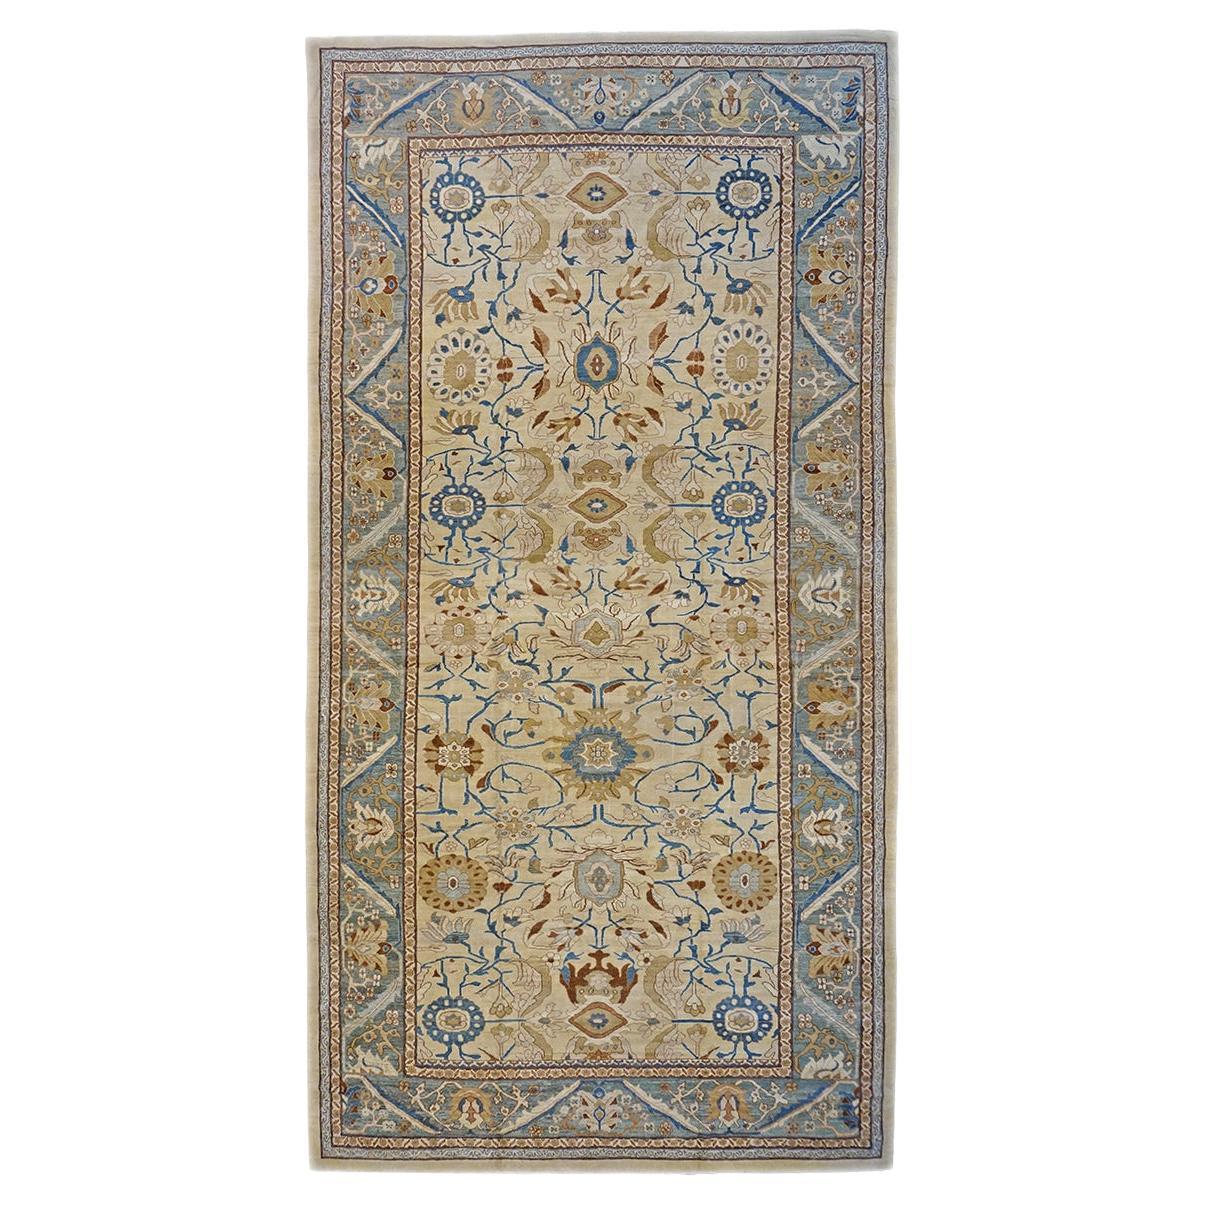 Türkischer Sultanabad-Teppich des 21. Jahrhunderts 13x20 in Elfenbein, Blau und Gold, handgefertigt